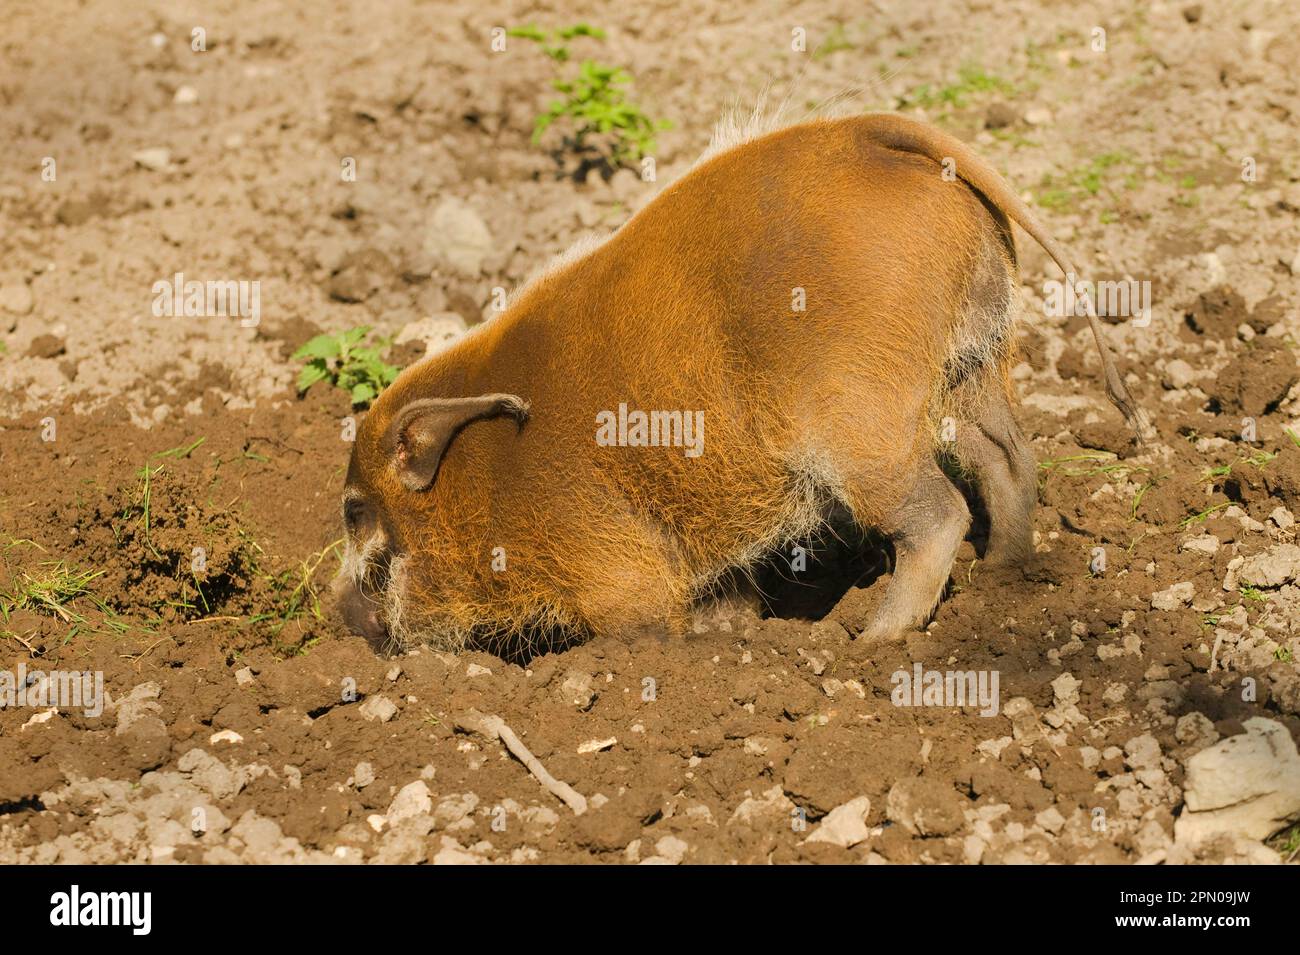 Porco rosso di fiume (Potamochoerus porcus) adulto, nutrimento, radicamento in terra, in cattività Foto Stock